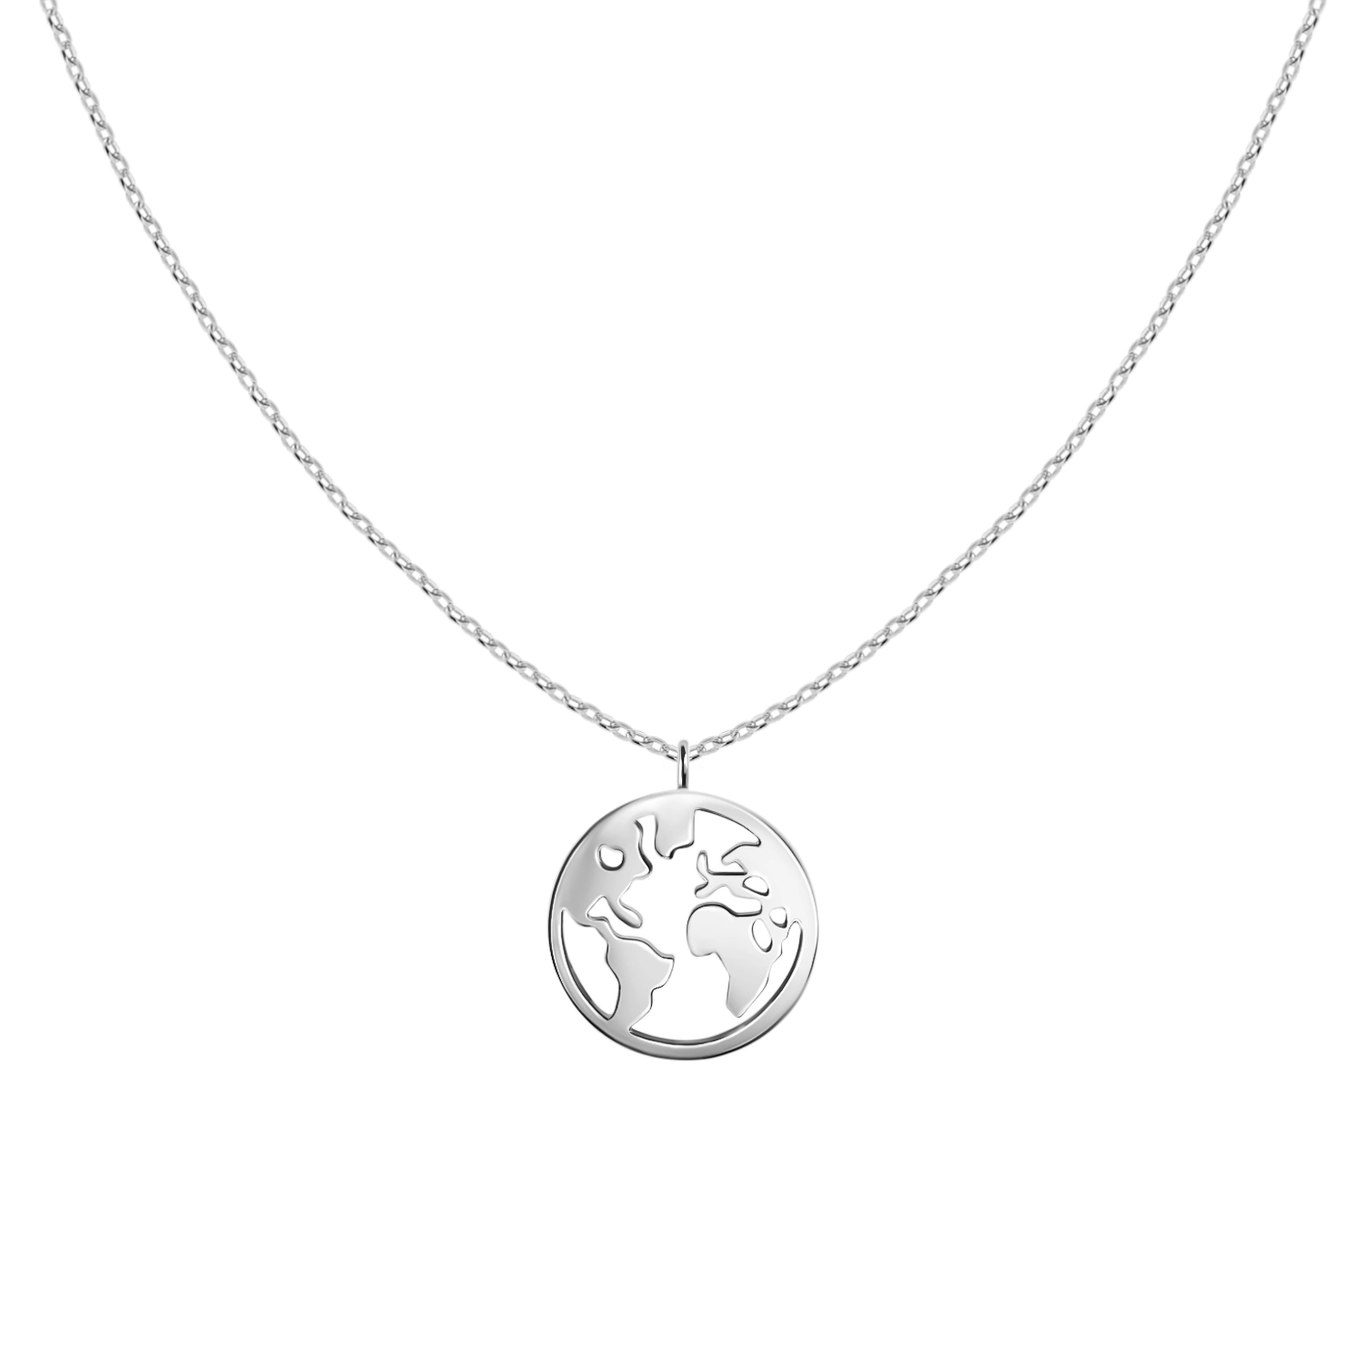 ZÓLDI jewels - World Is Mine Necklace Silver